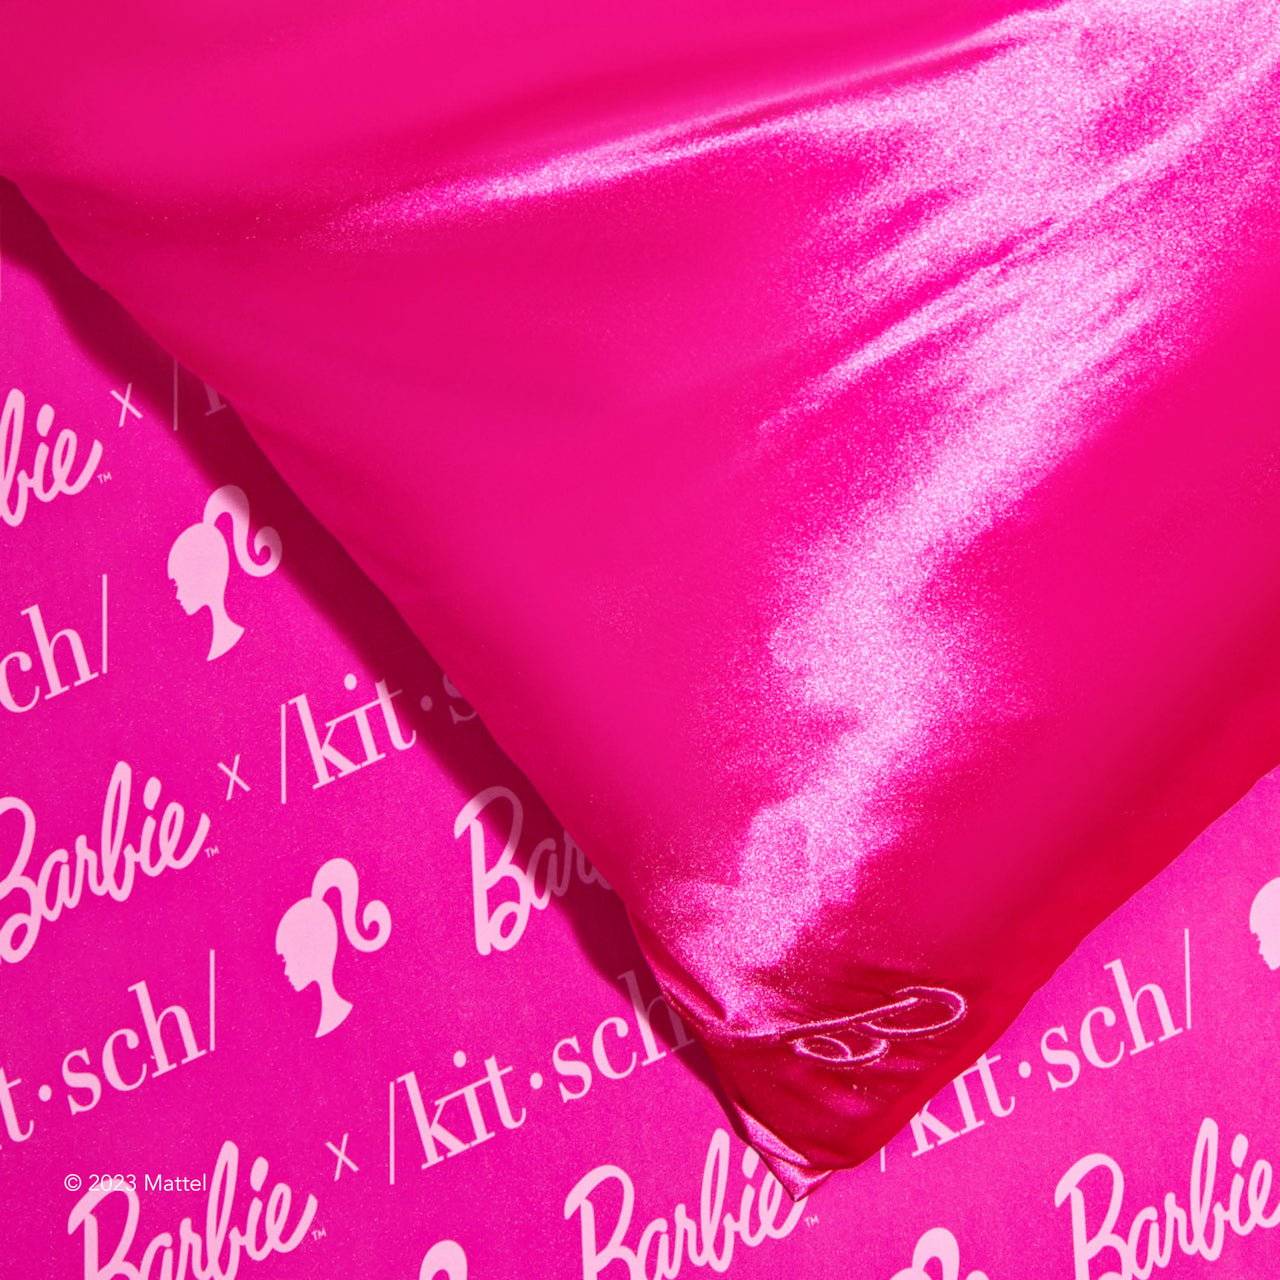 Barbie™ x Kitsch Sammlerpaket